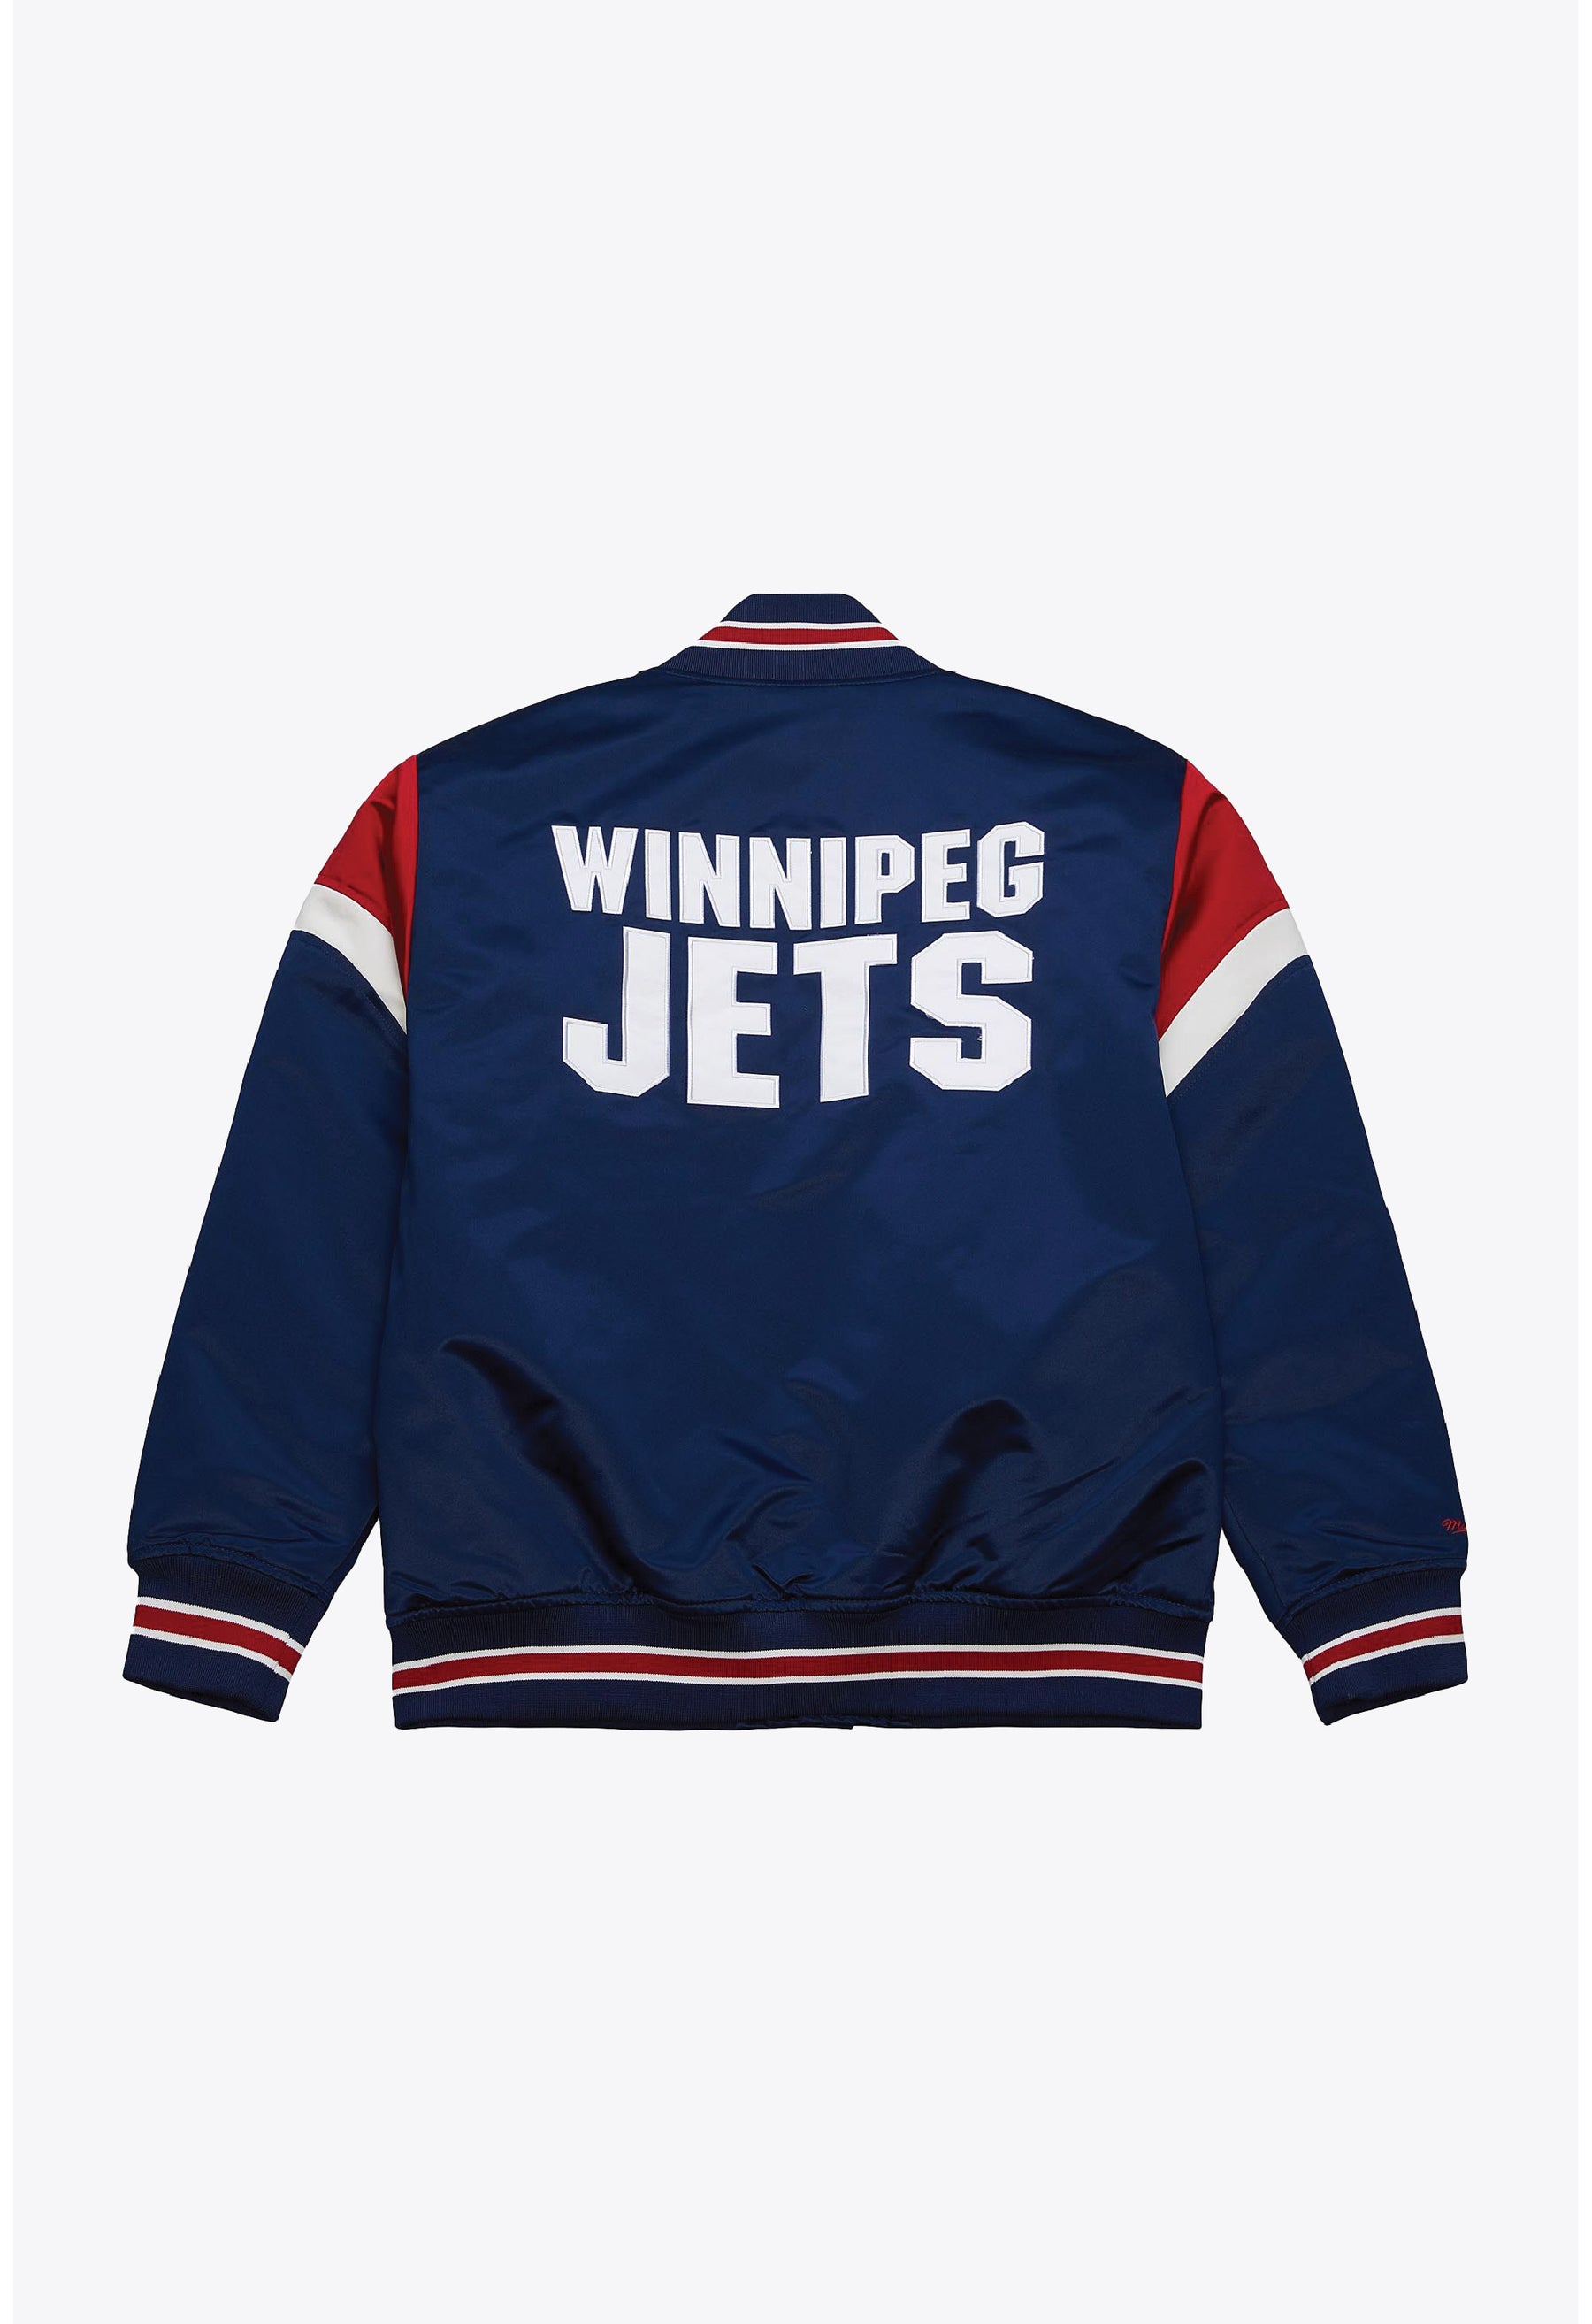 Winnipeg Jets Heavyweight Satin Jacket